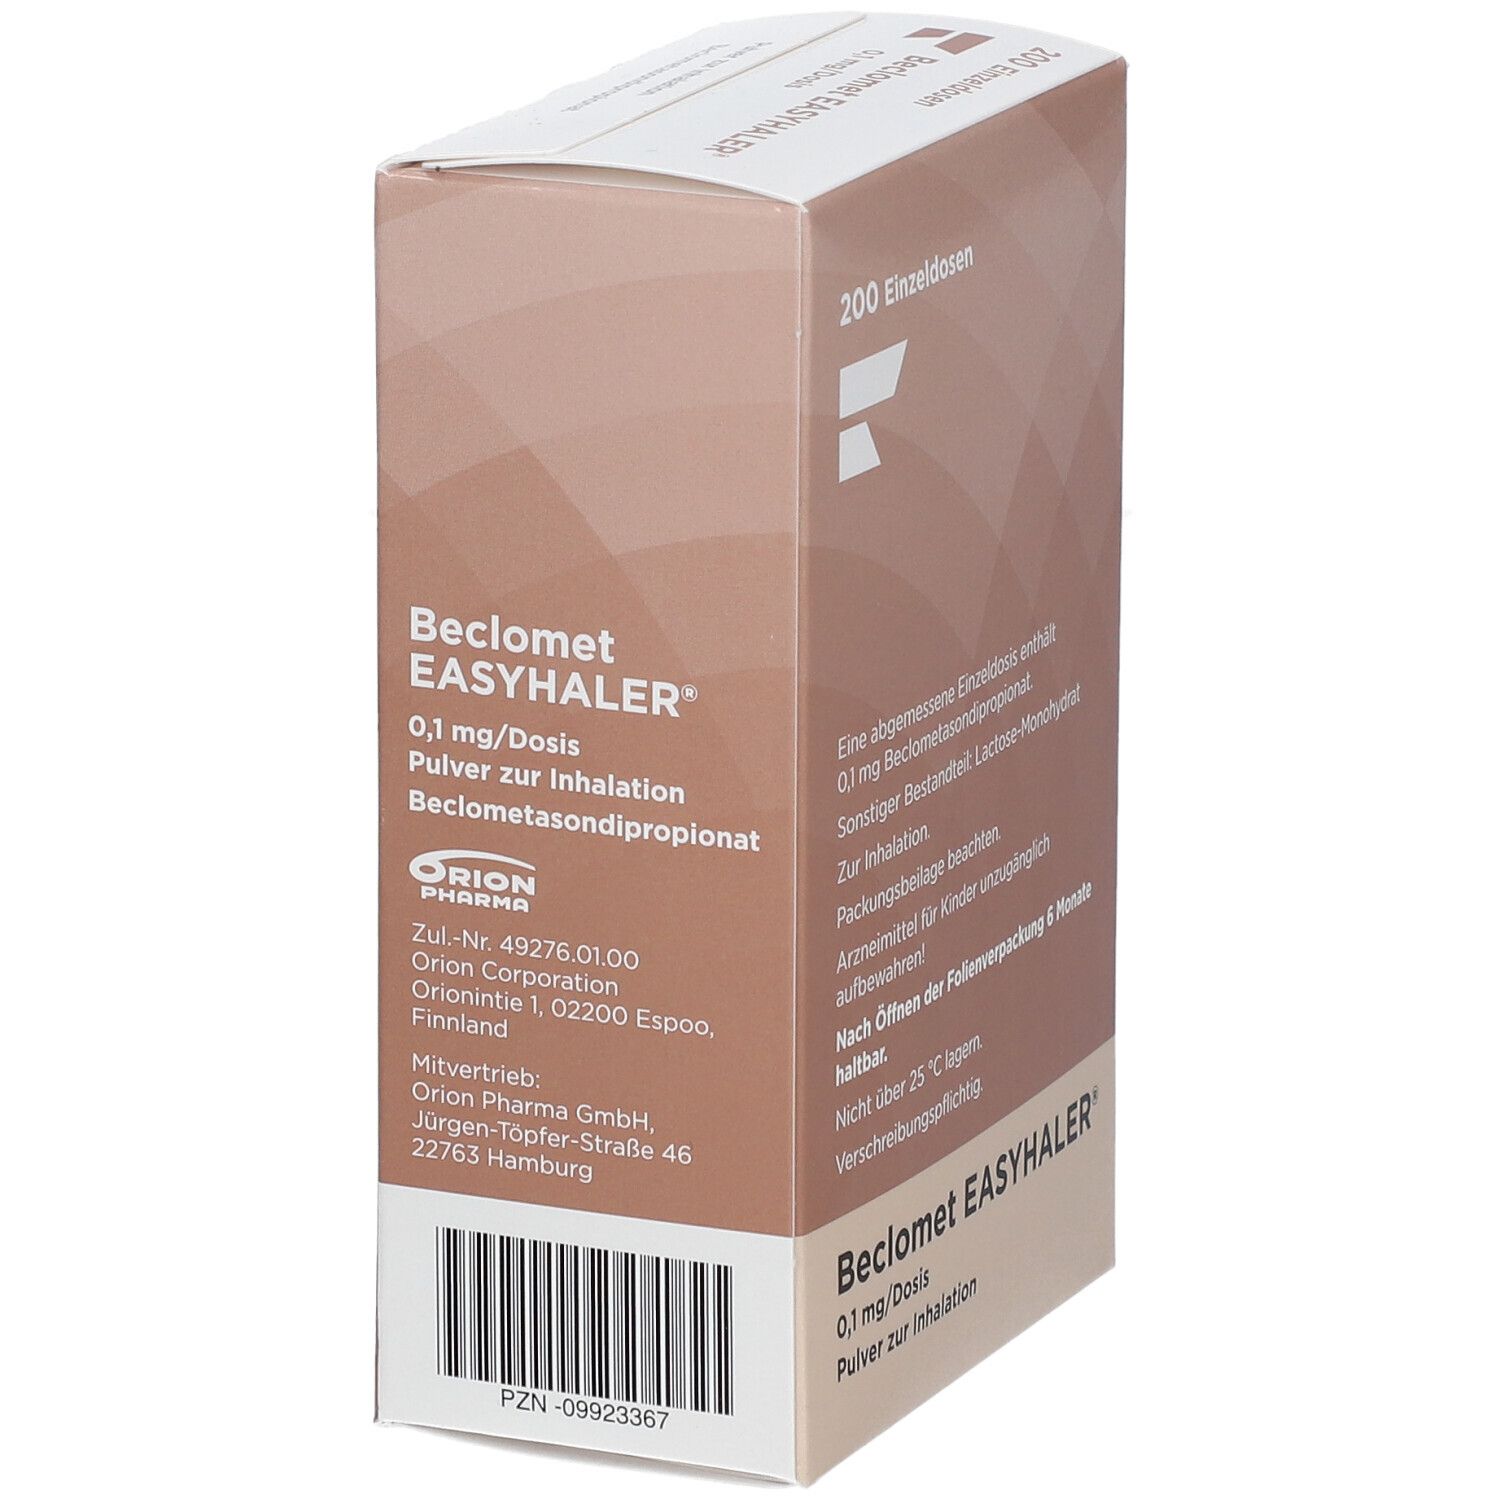 Beclomet Easyhaler® 0,1 mg/Dosis